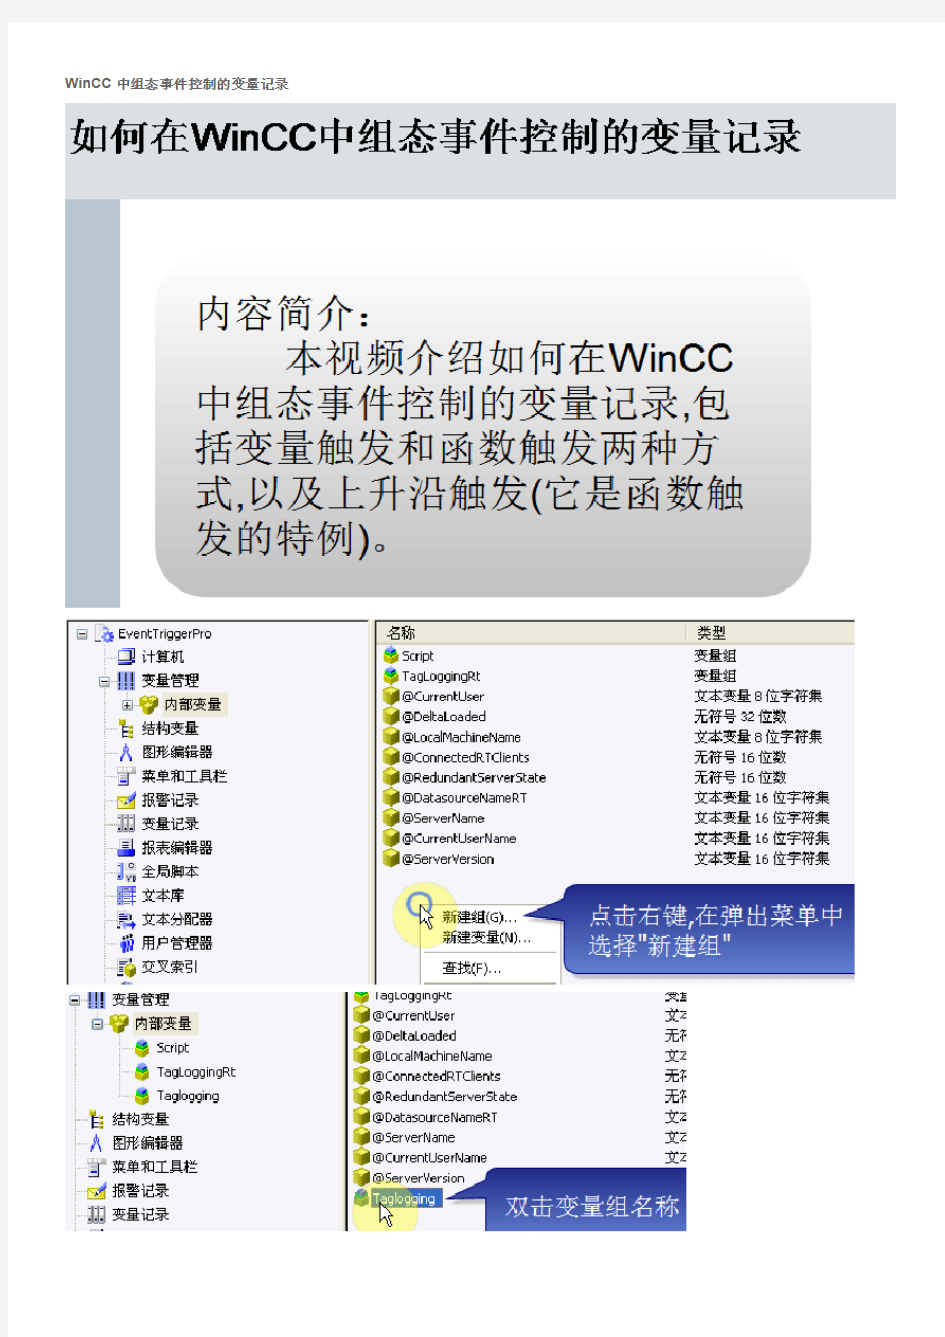 WinCC中组态事件控制的变量记录